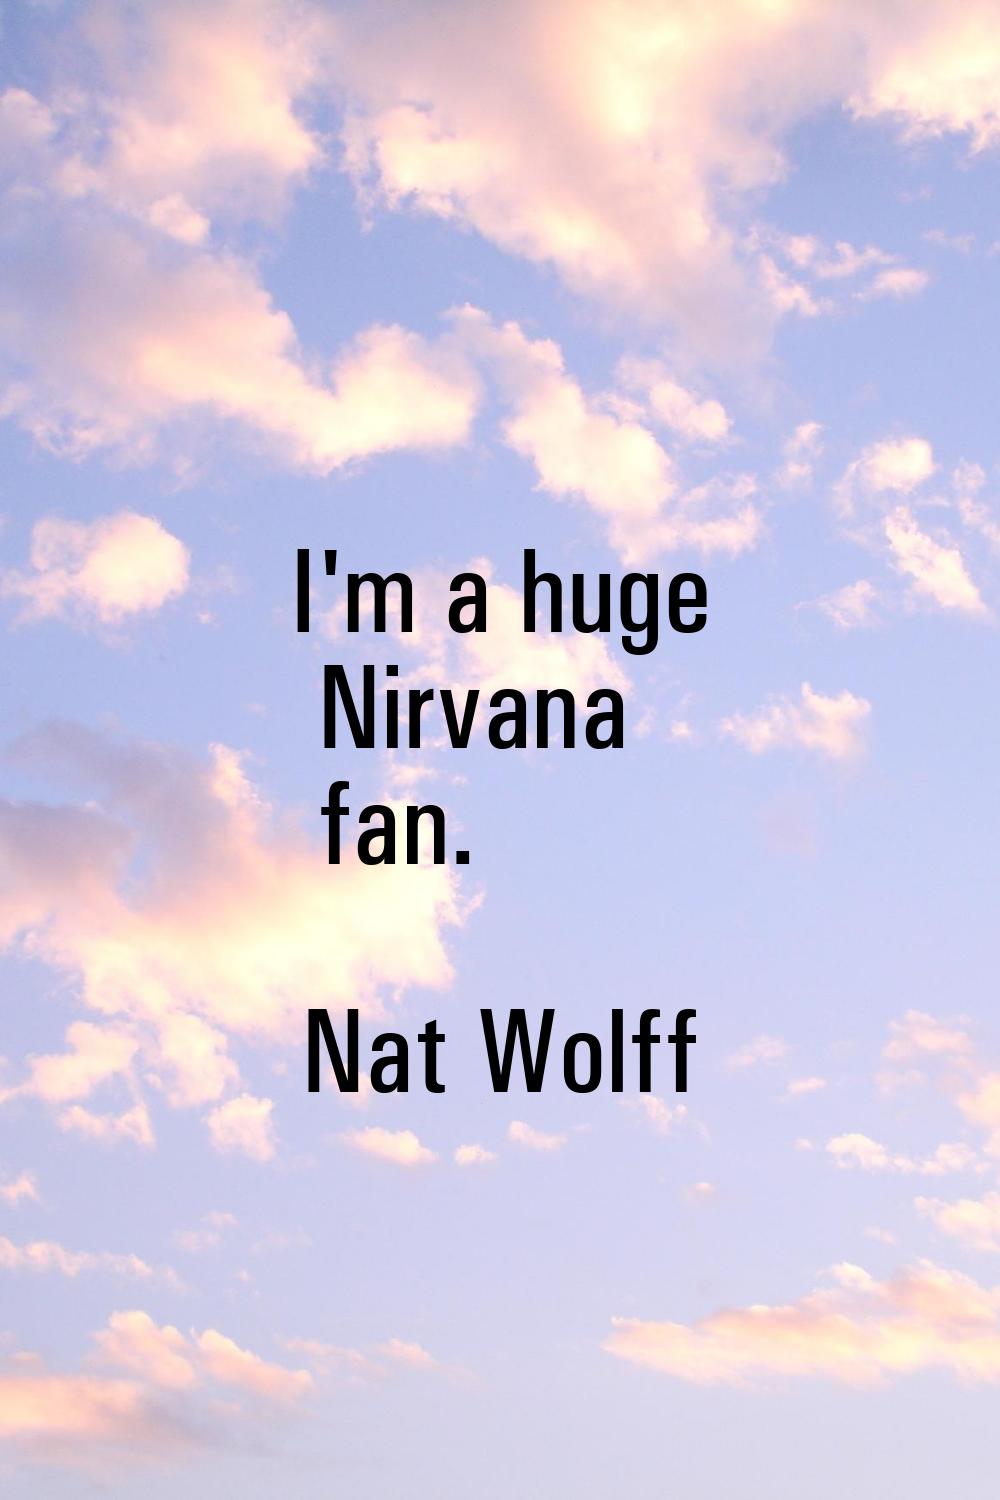 I'm a huge Nirvana fan.